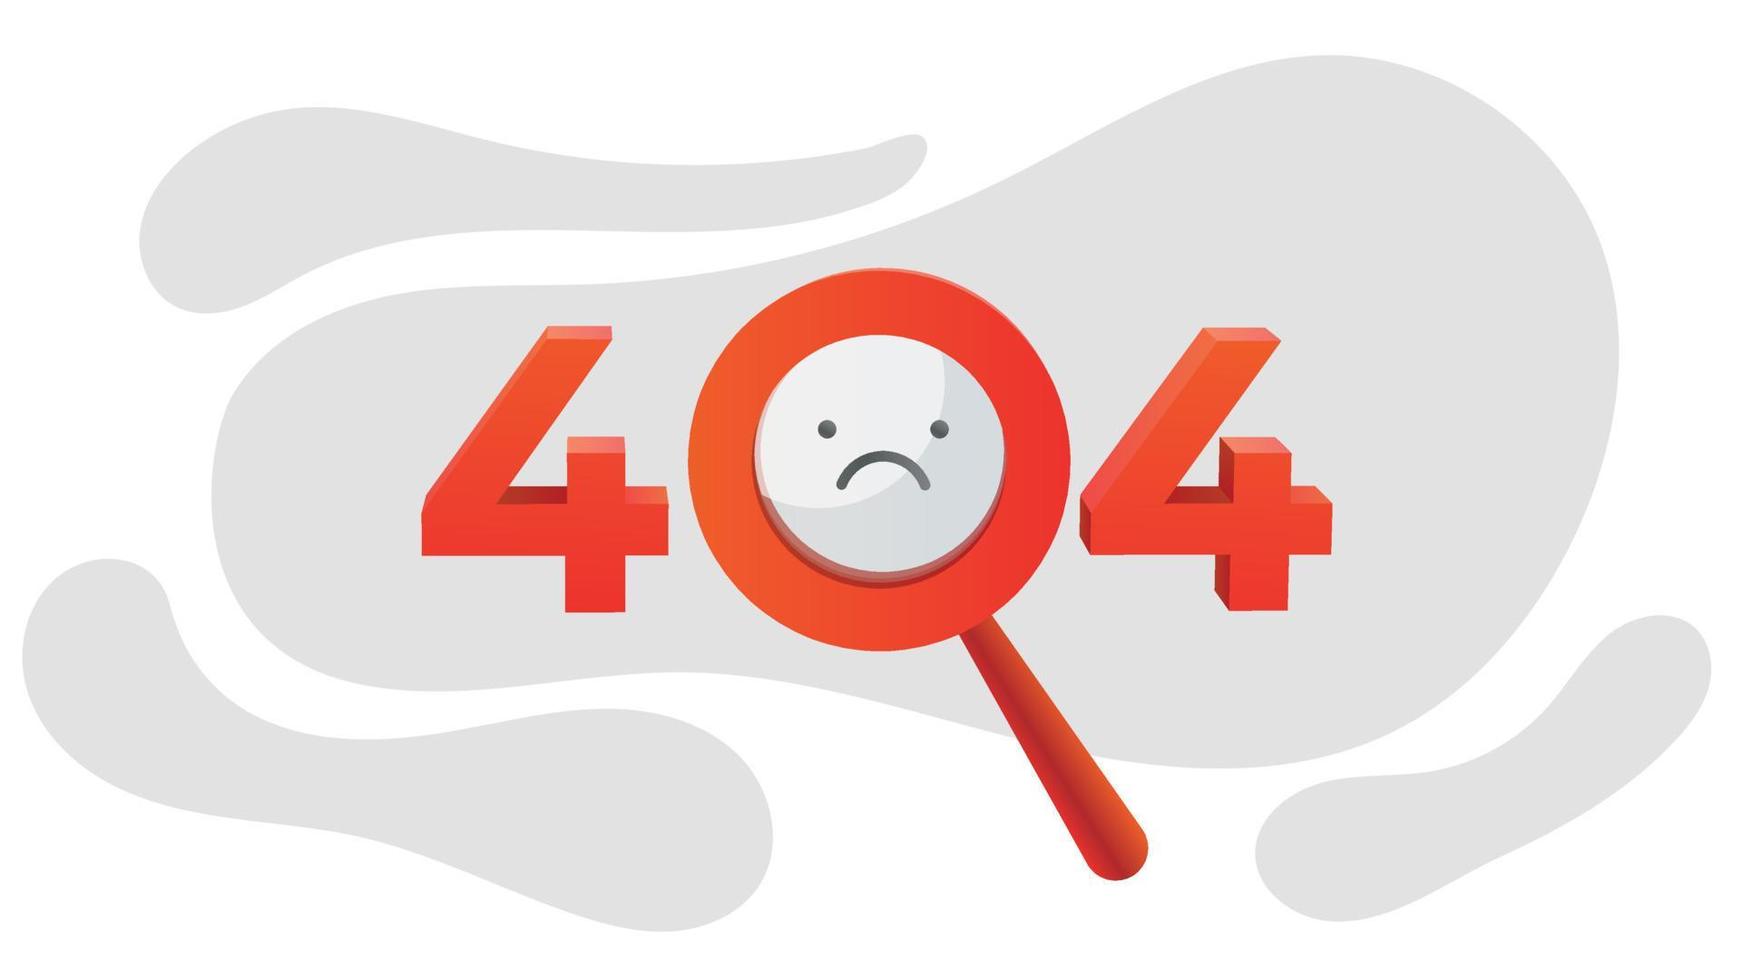 fout 404 pagina niet gevonden concept illustratie. webpagina fout creatief ontwerp. modern grafisch element voor bestemmingspagina, infographic, pictogram vector